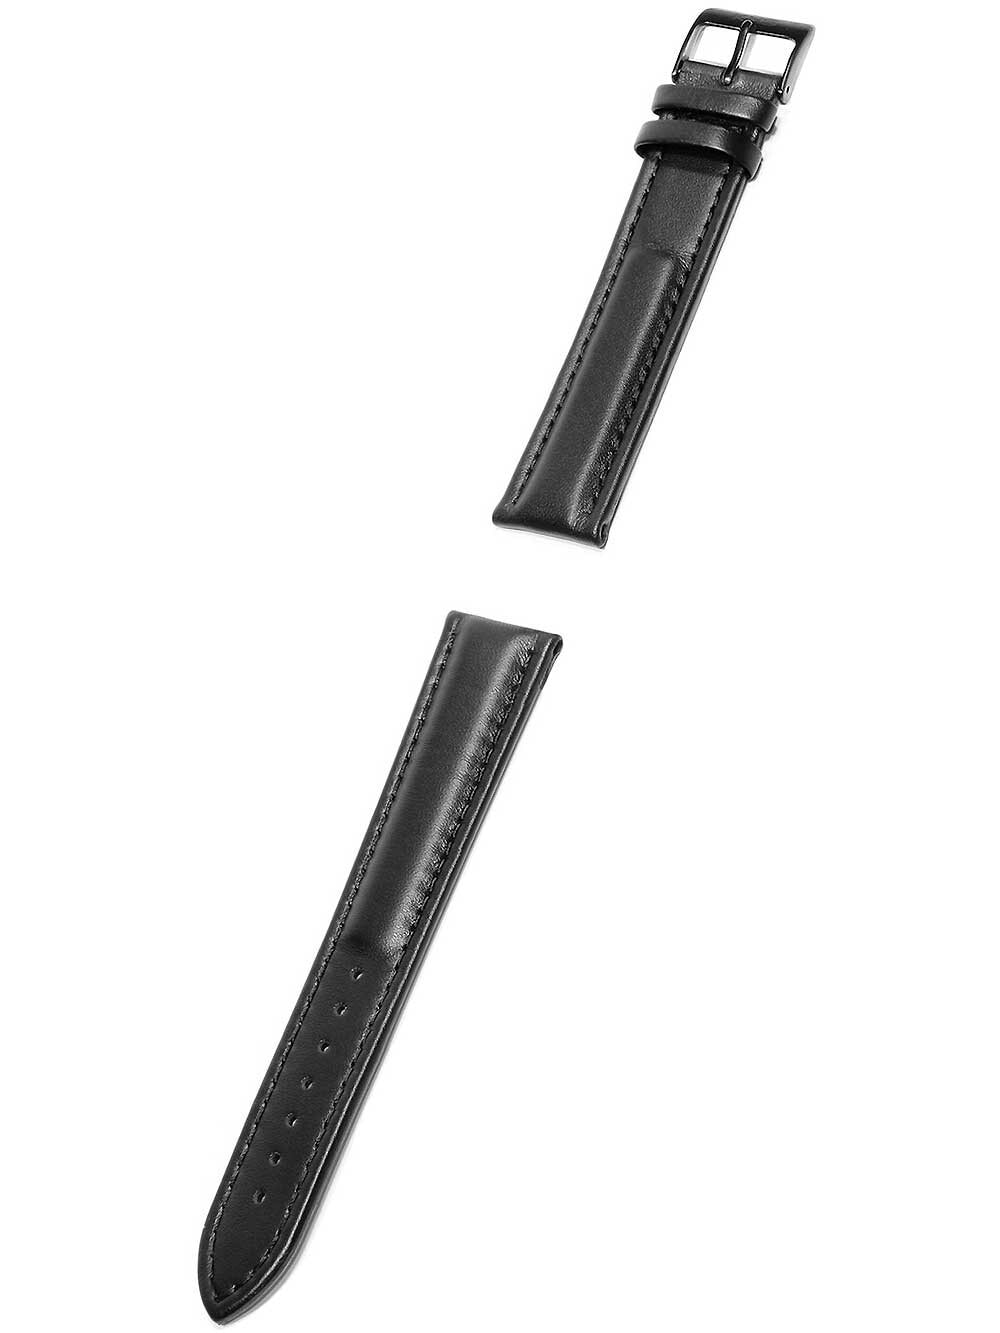 Ремешок или браслет для часов KHS calf leather strap 22 mm lug width KHS.EBL1.22